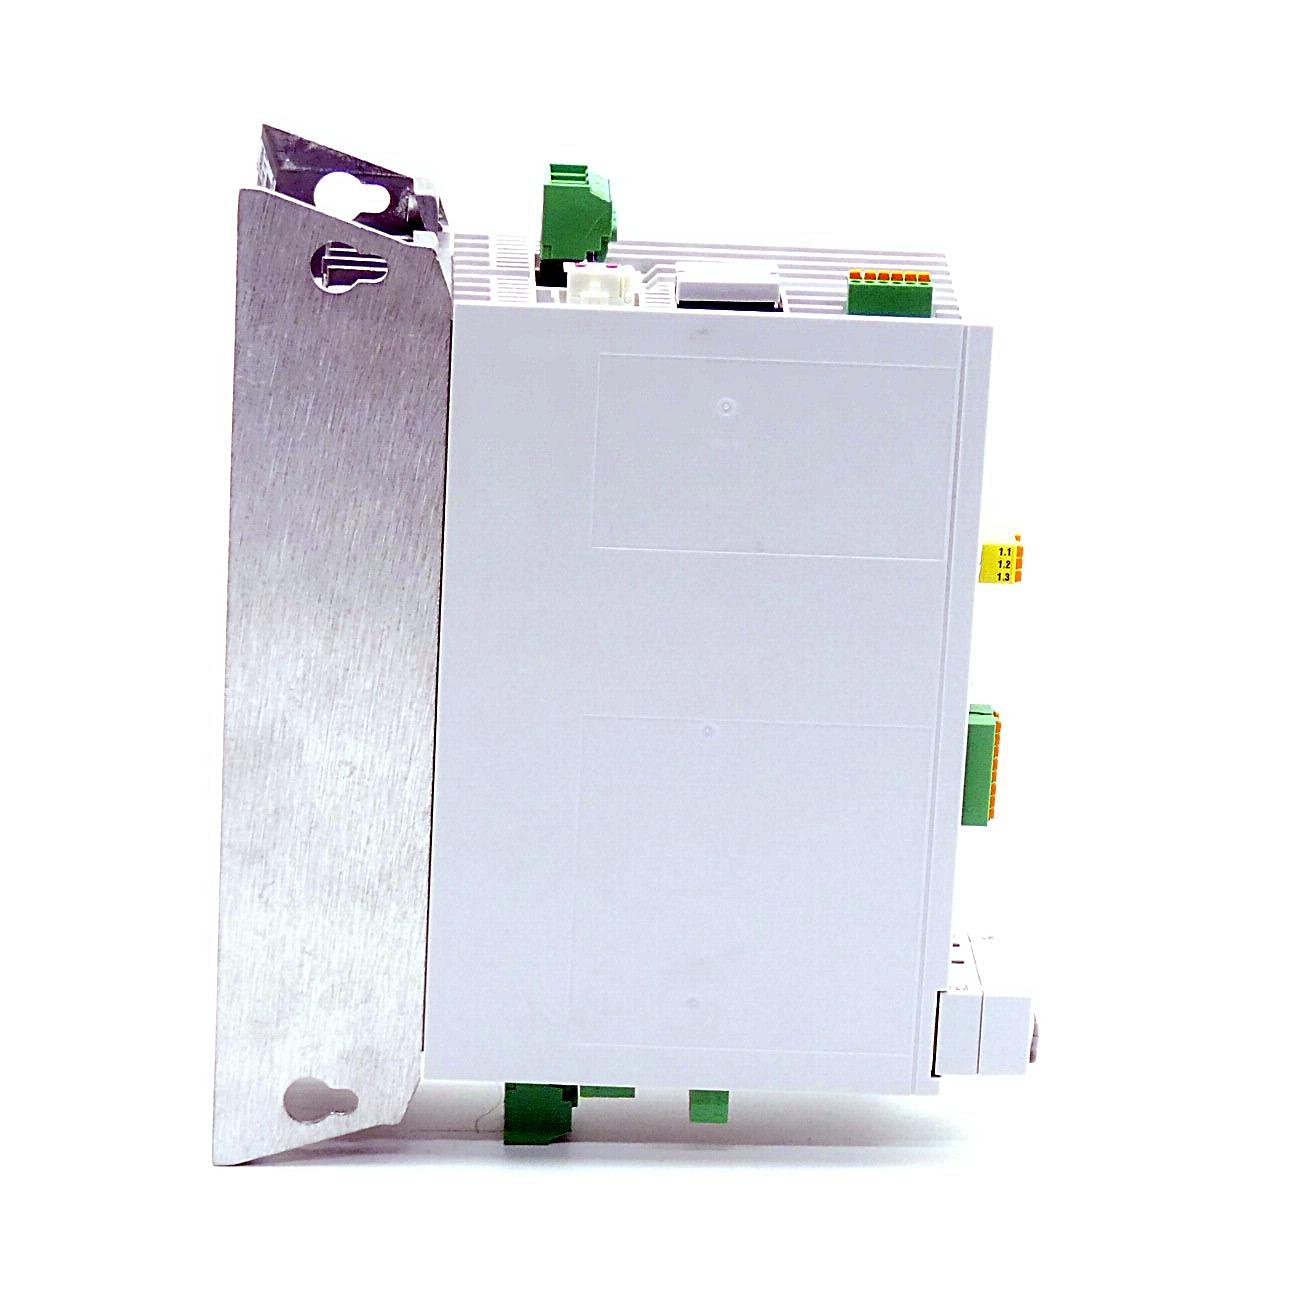 Produktfoto 3 von REXROTH IndraDrive Kompaktumrichter HCS01.1E-W0018-A-03-B-ET-EC-NN-S4-NN-FW